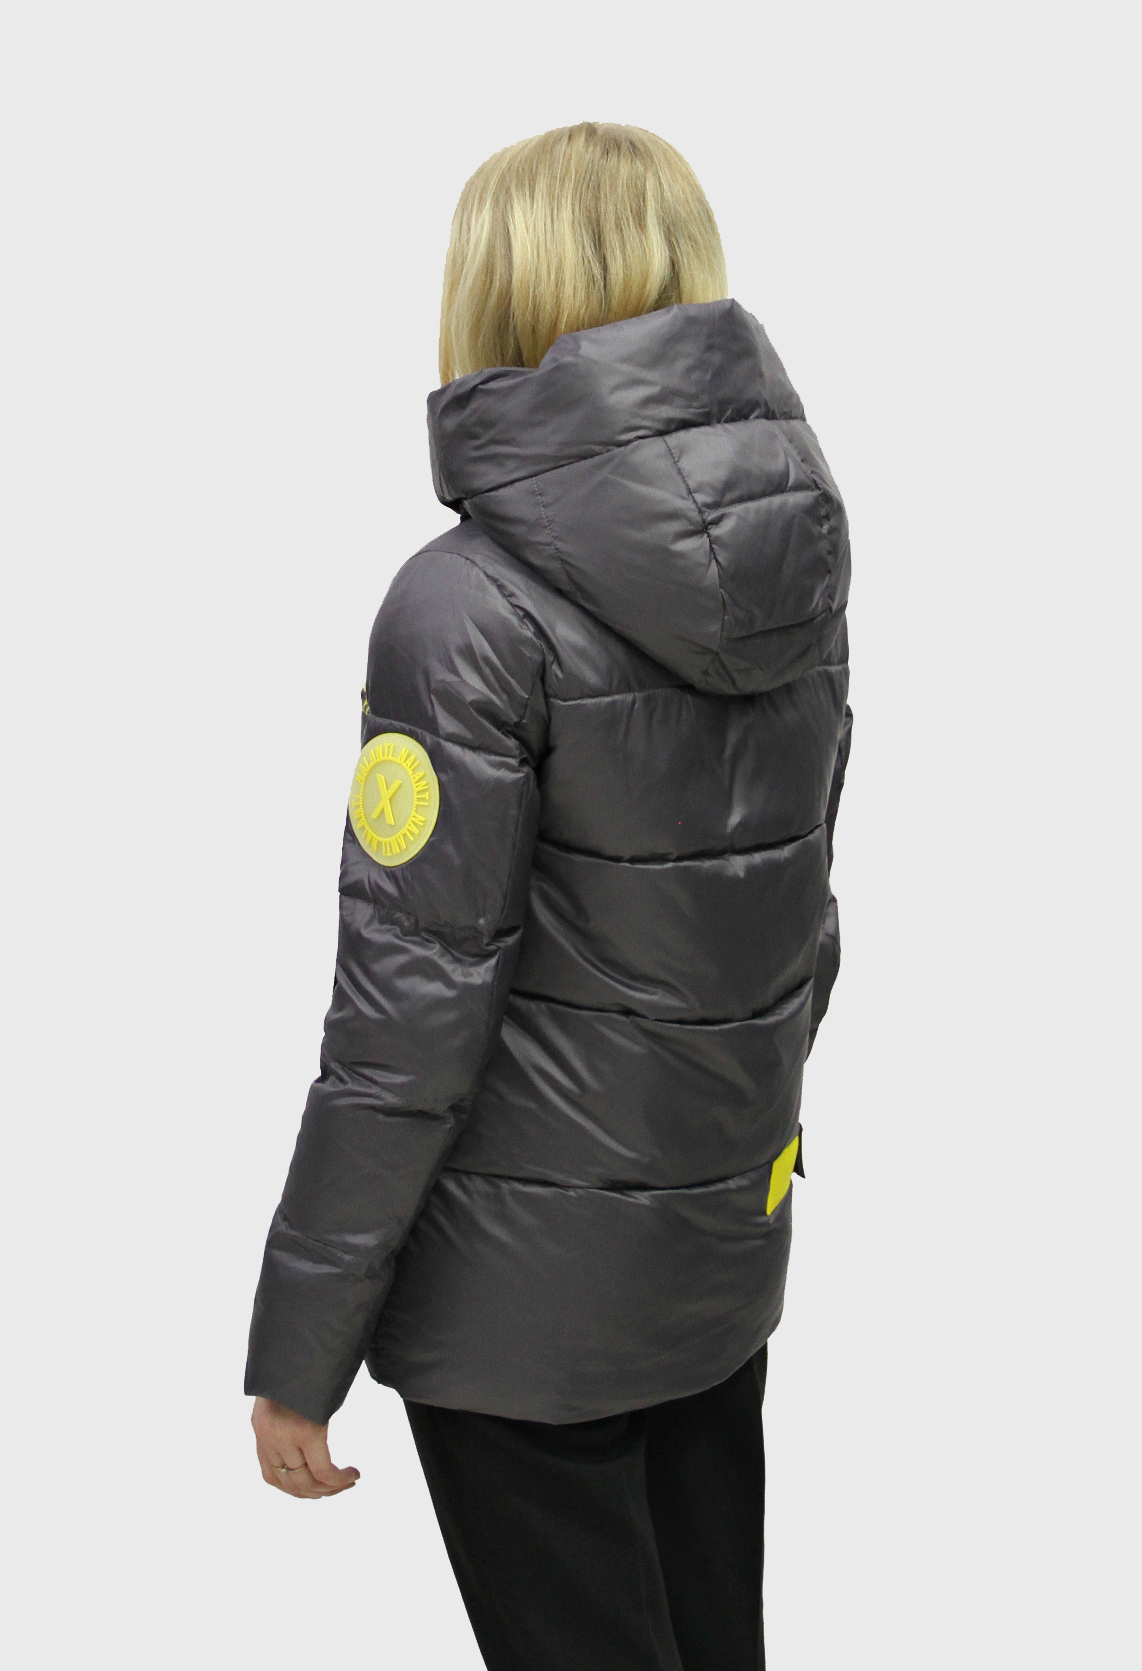 Женская зимняя куртка (FineBabyCat)